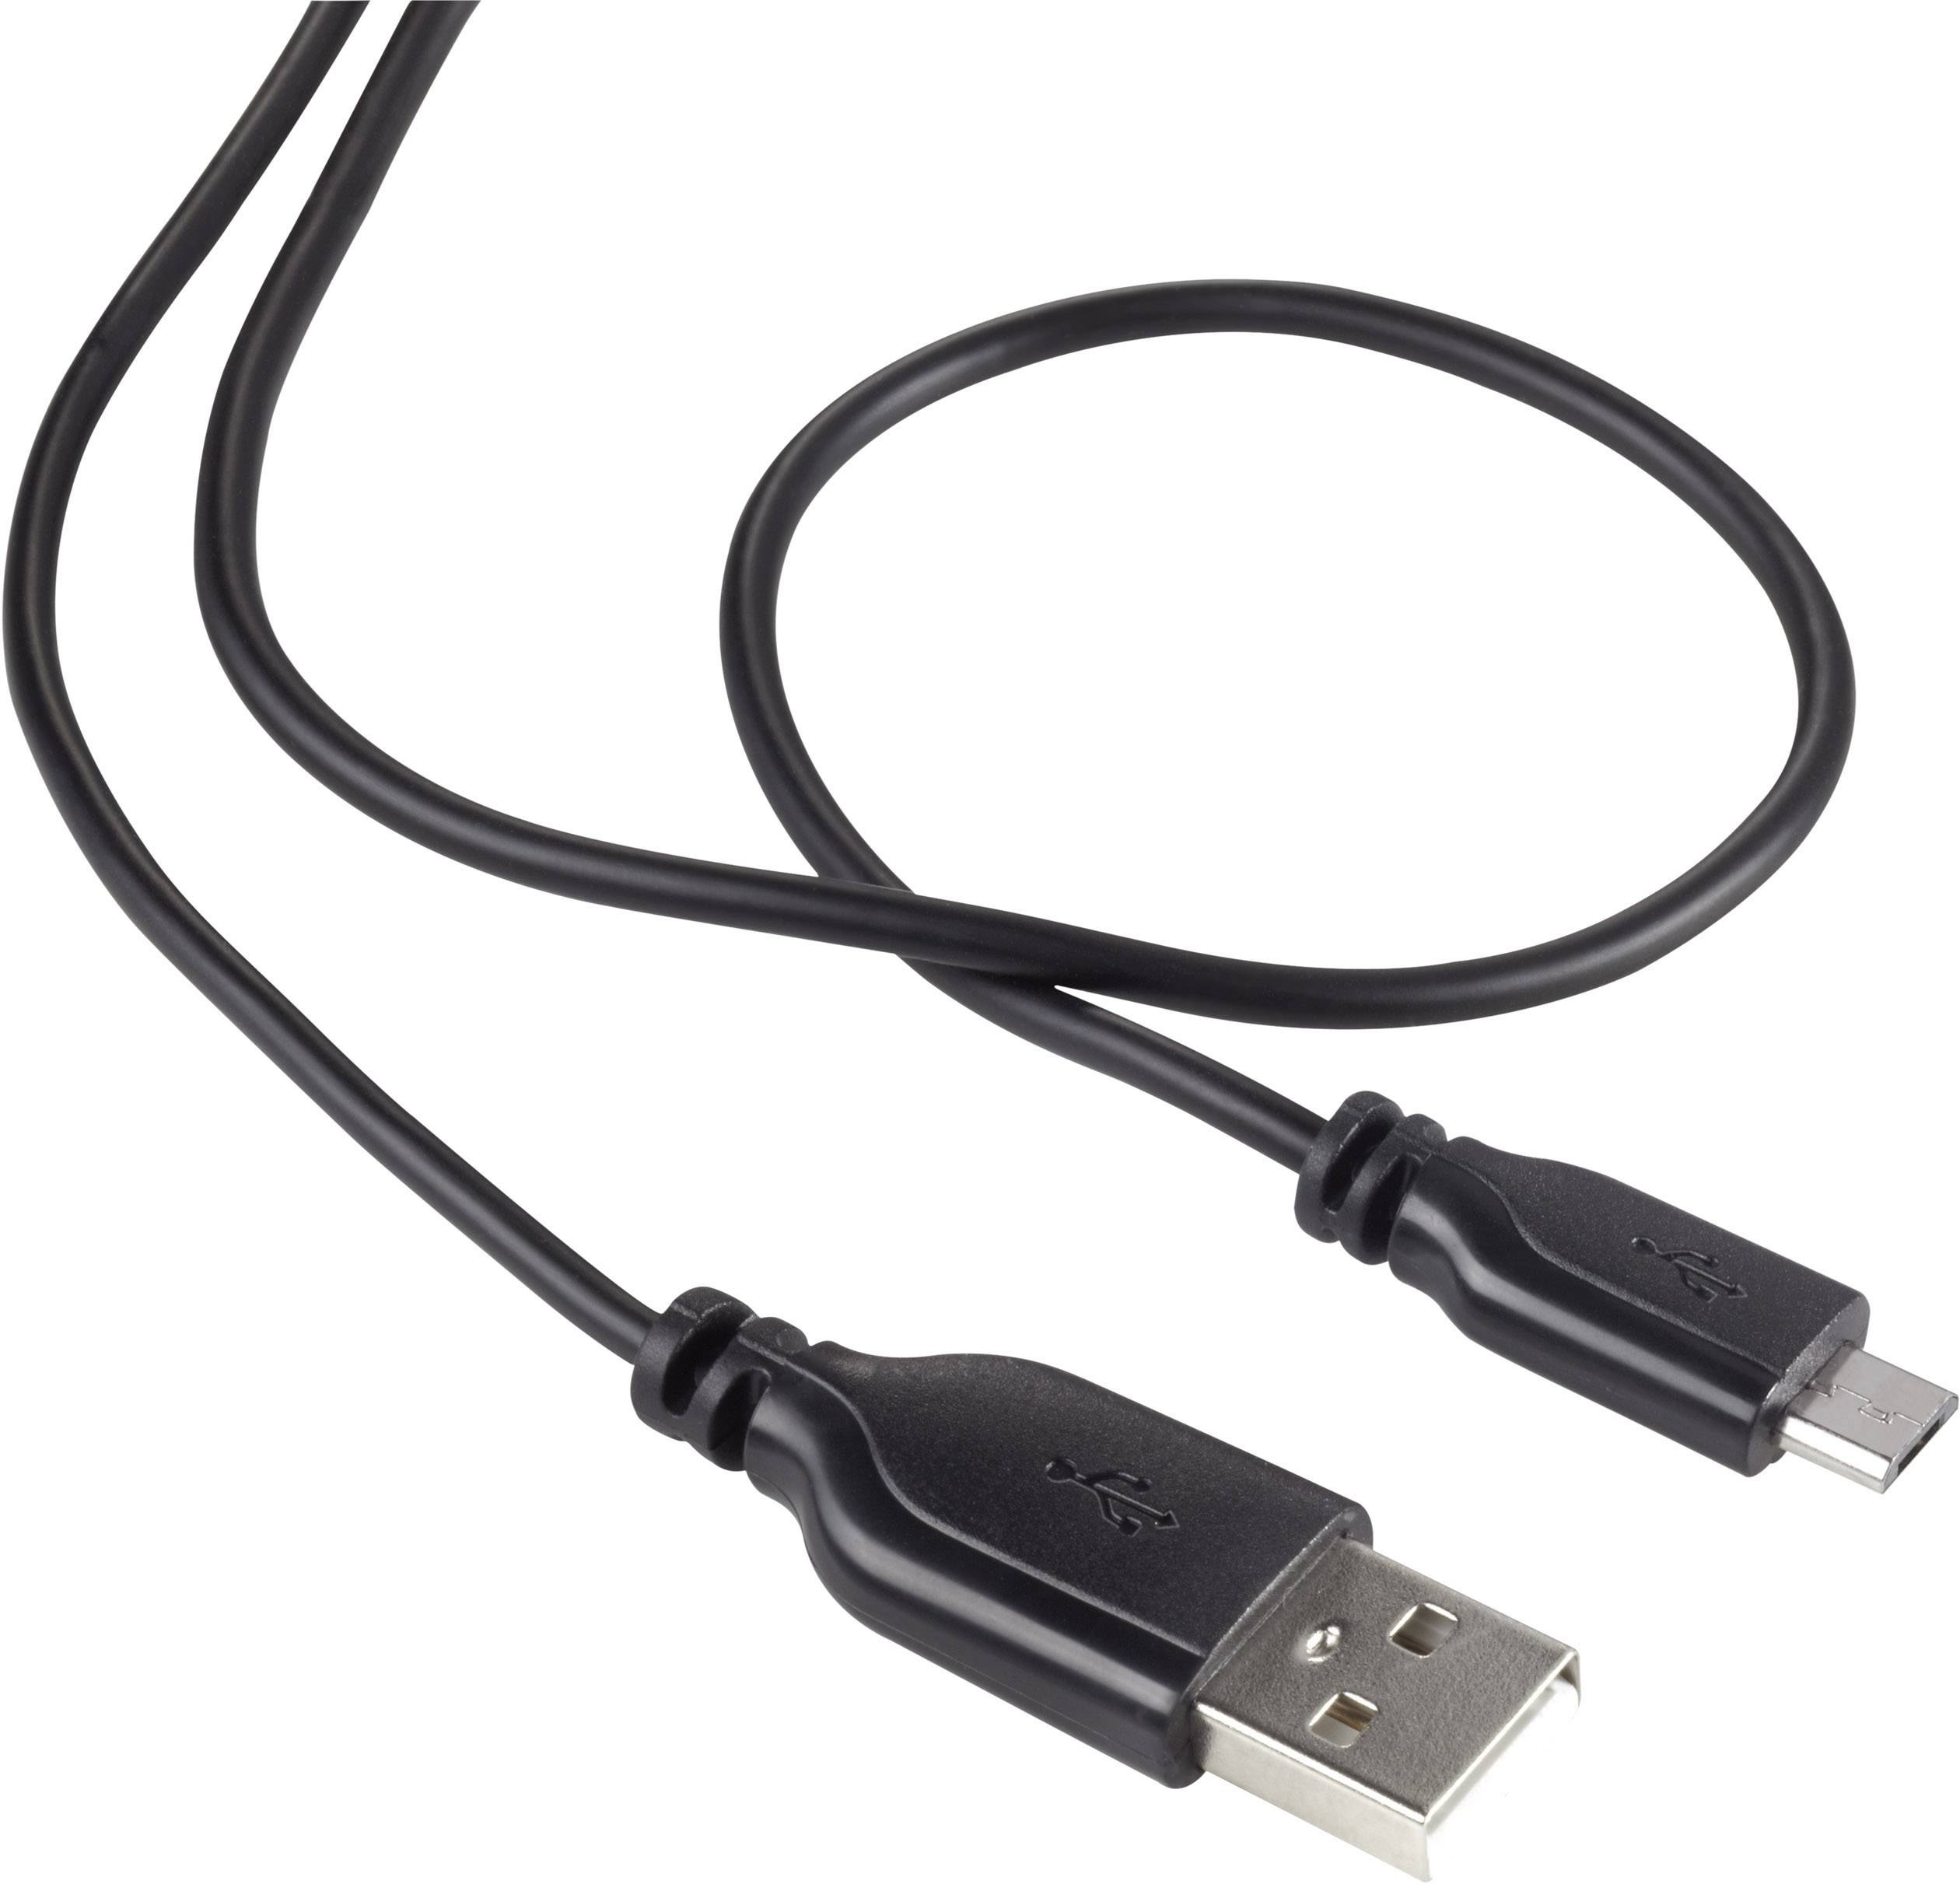 CONRAD Renkforce USB 2.0 Kabel [1x USB 2.0 Stecker A - 1x USB 2.0 Stecker Micro-B] 1 m Schwarz Super